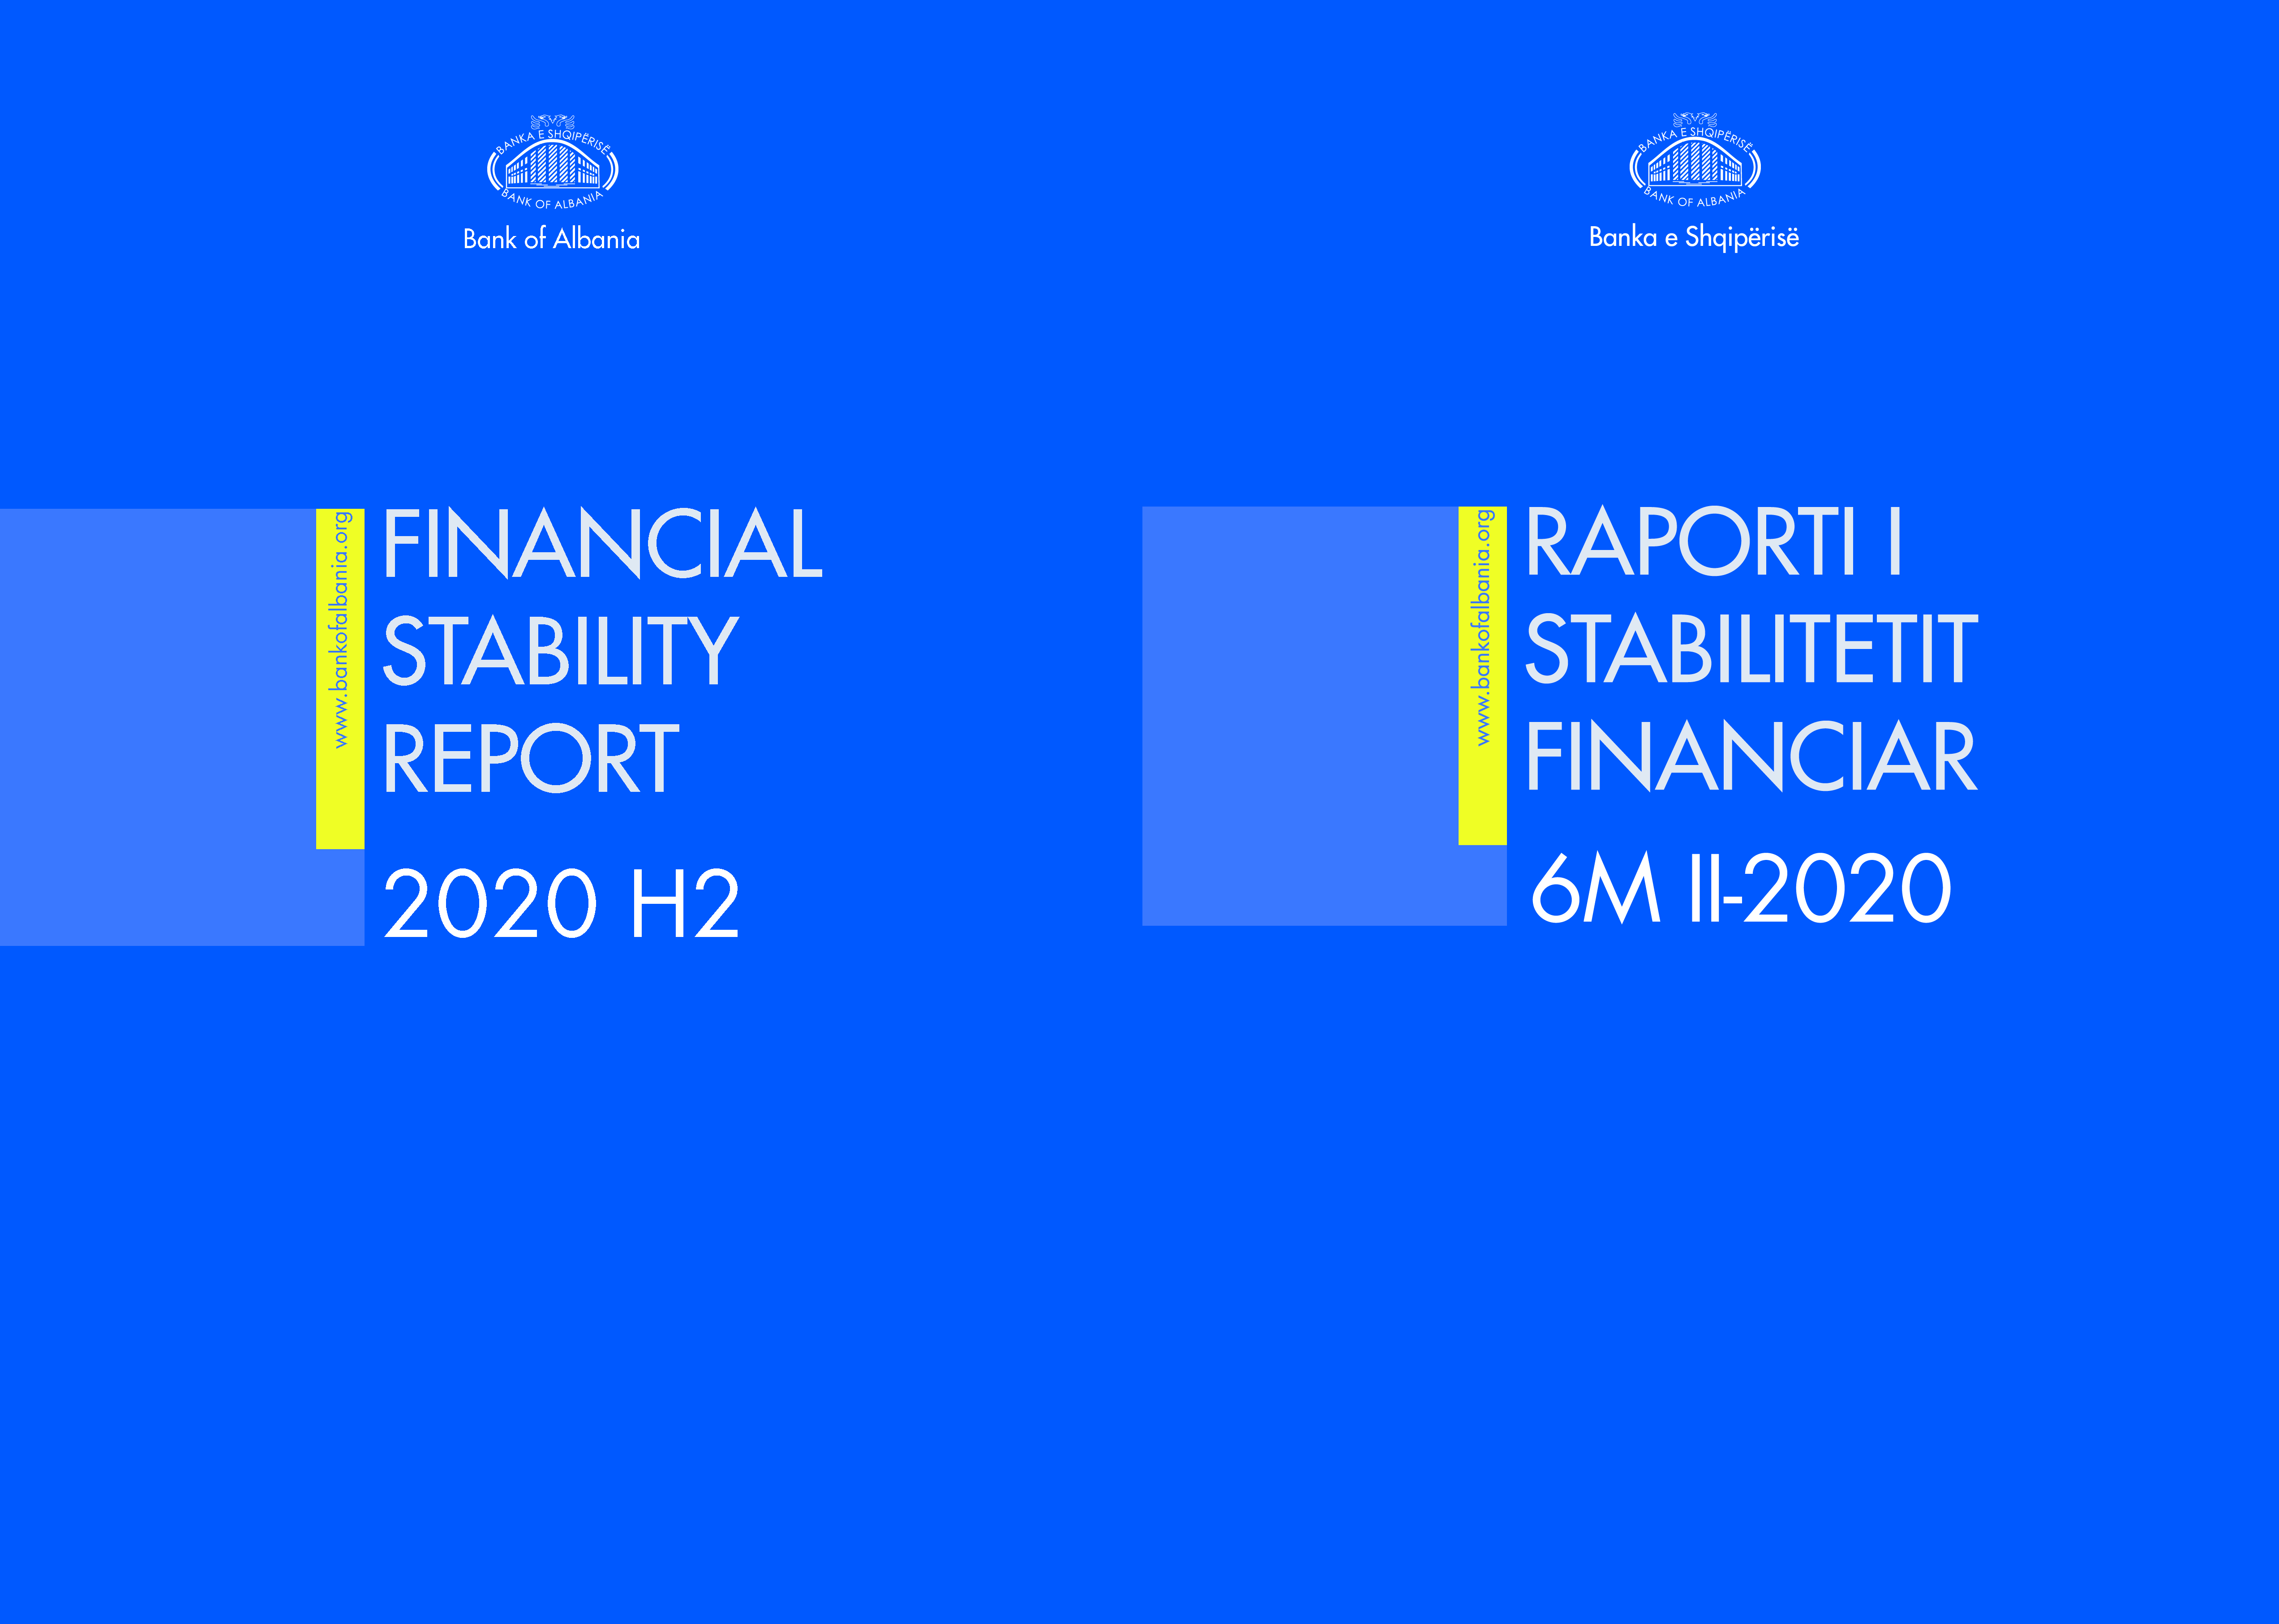 Raporti i Stabilitetit Financiar për gjashtëmujorin e dytë të vitit 2020